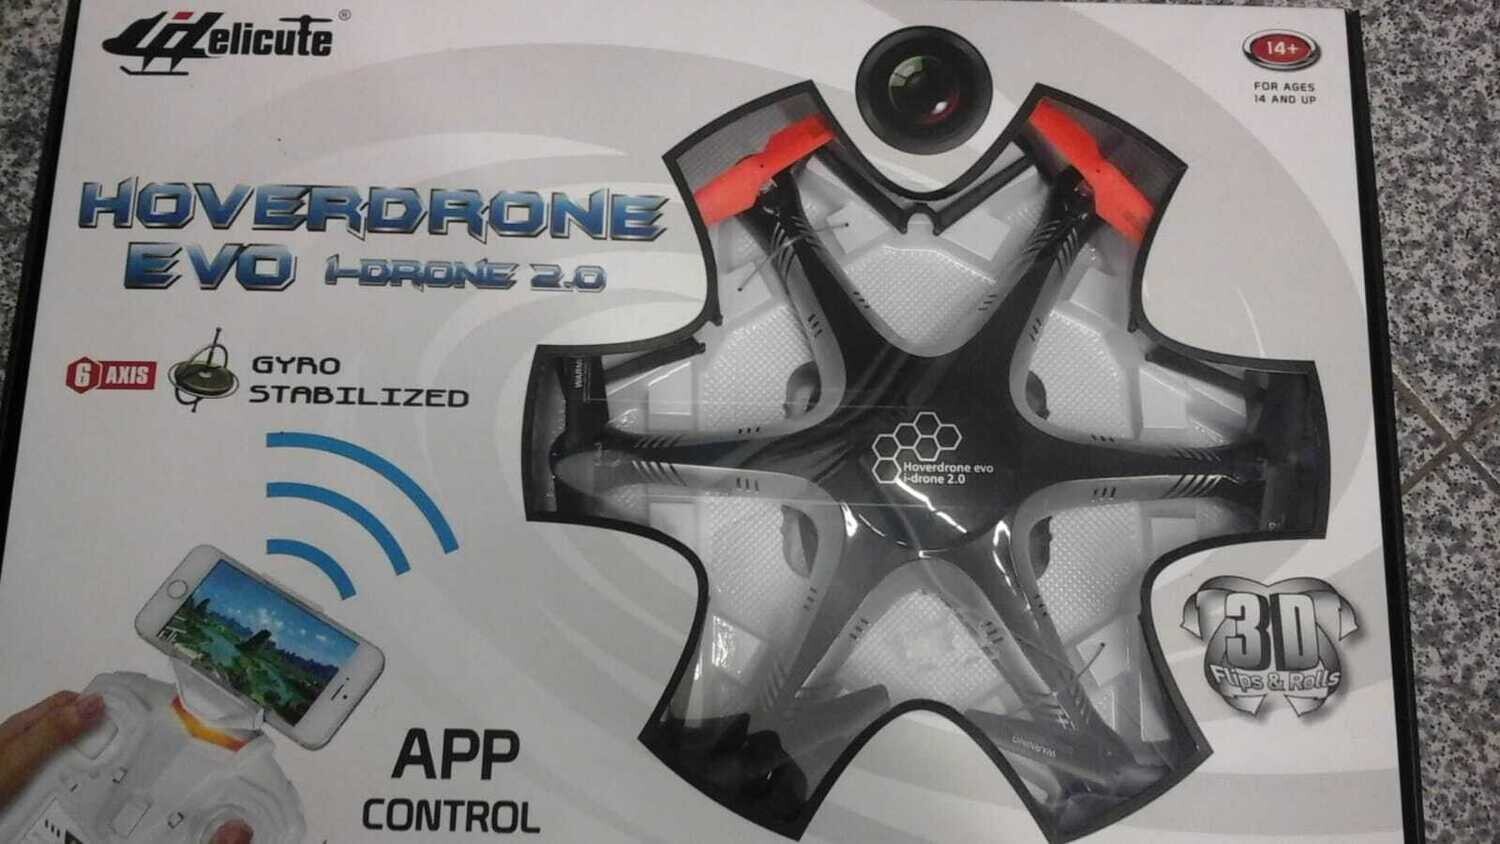 DRONE HOVERDRONE EVO I-DRONE 2.0